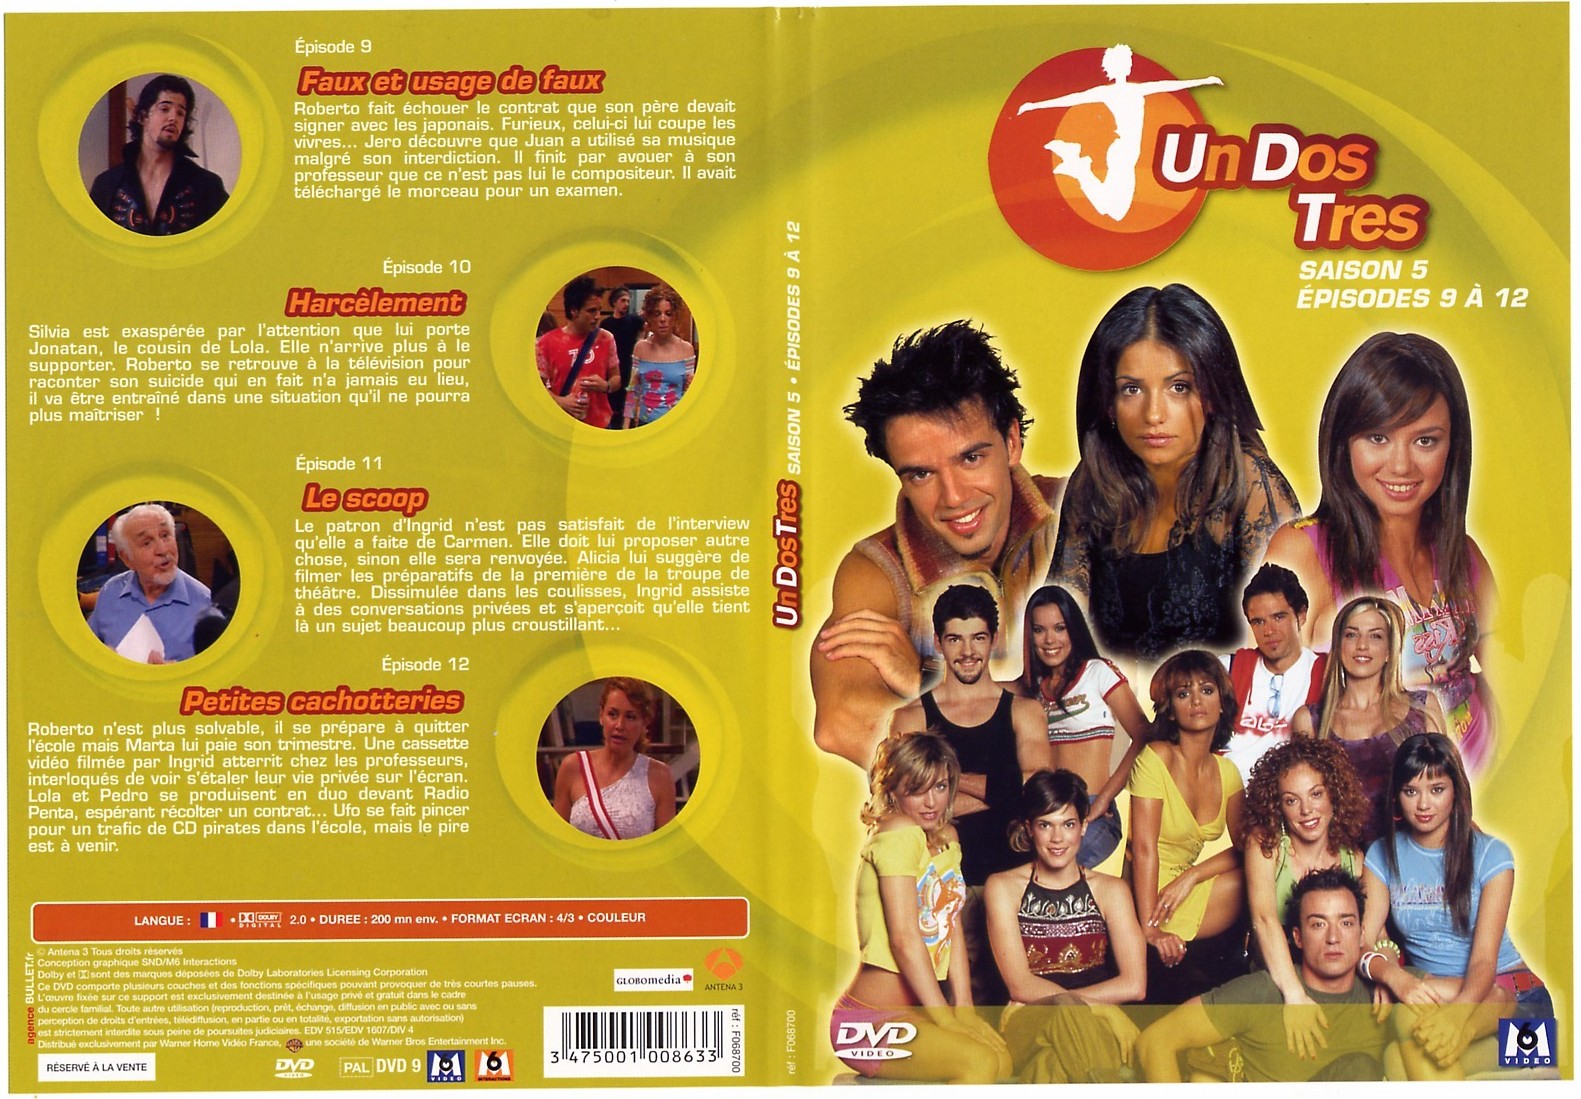 Jaquette DVD Un Dos Tres saison 5 Episodes 9  12